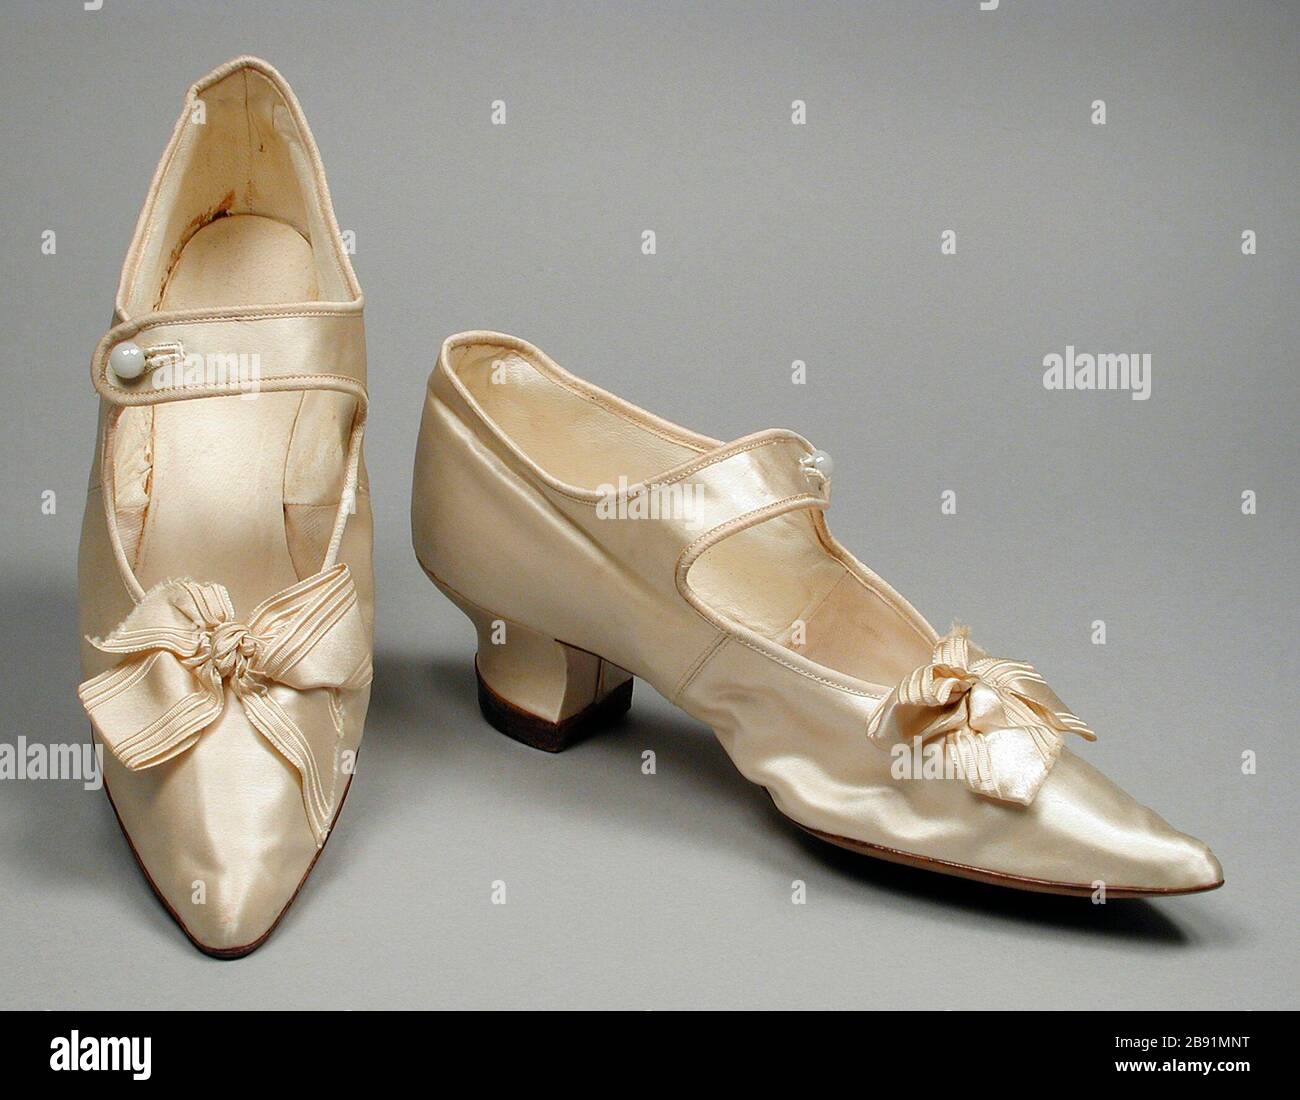 Paar Woman's Bar Schuhe; Englisch: United States, circa 1890 Kostüme,  Zubehör Seide Satin, komfortable Leder 10 x 2 3/4 x 4 1/2 in. (25,4 x 6,98  x 11,43 cm) jedes Geschenk von